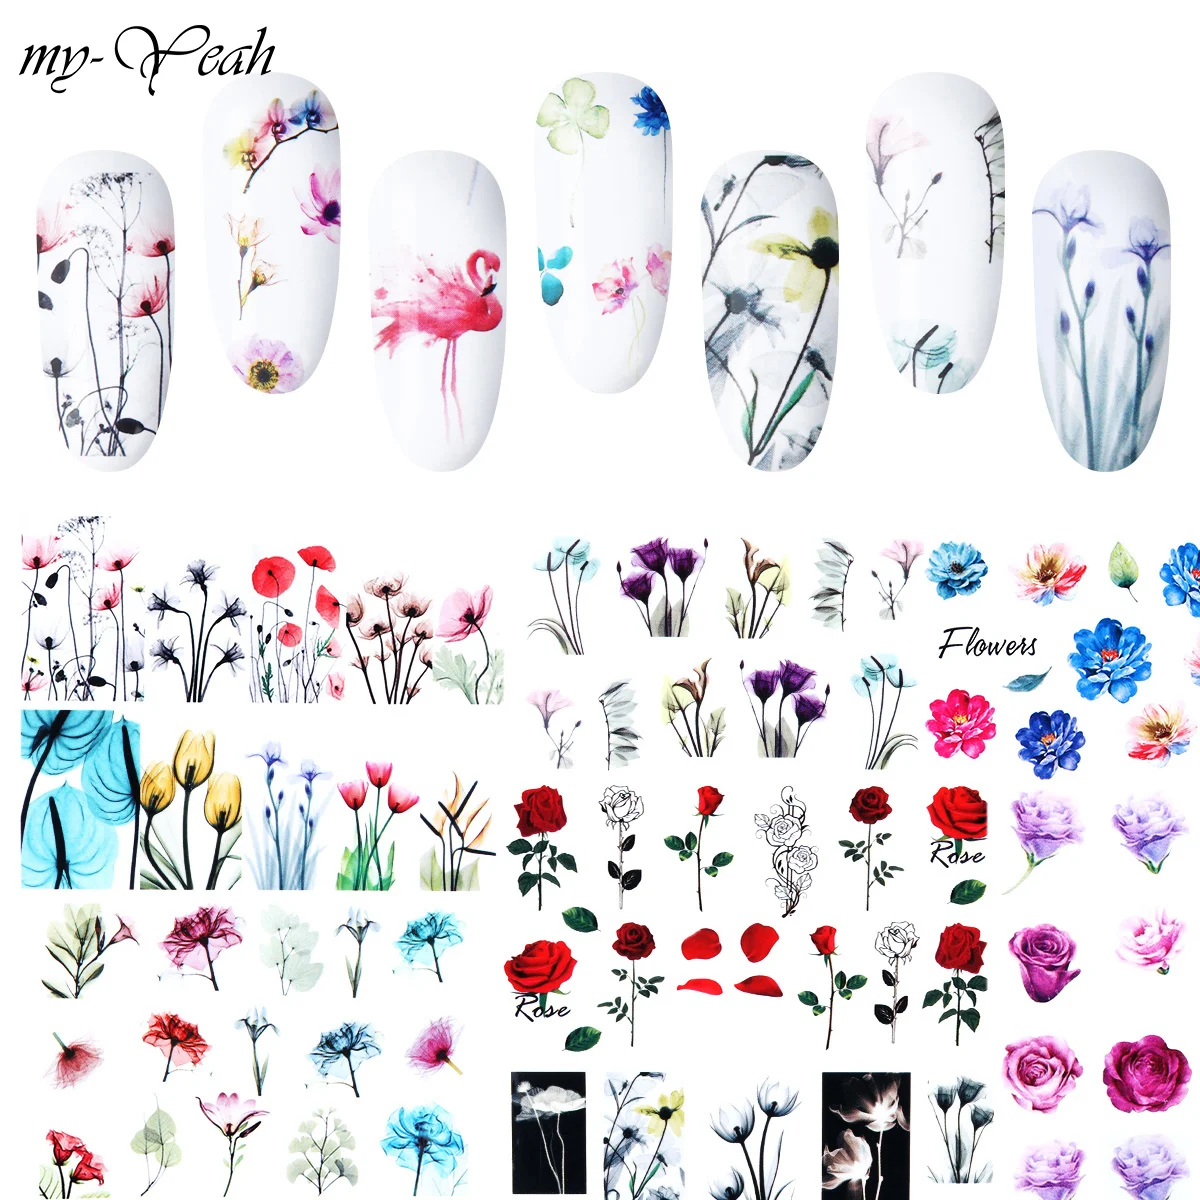 My-Yeah 24 листа Фламинго ногти, декорирование, цветы серии переводные наклейки элегантный узор Переводные картинки с бабочками водяной знак DIY декоры